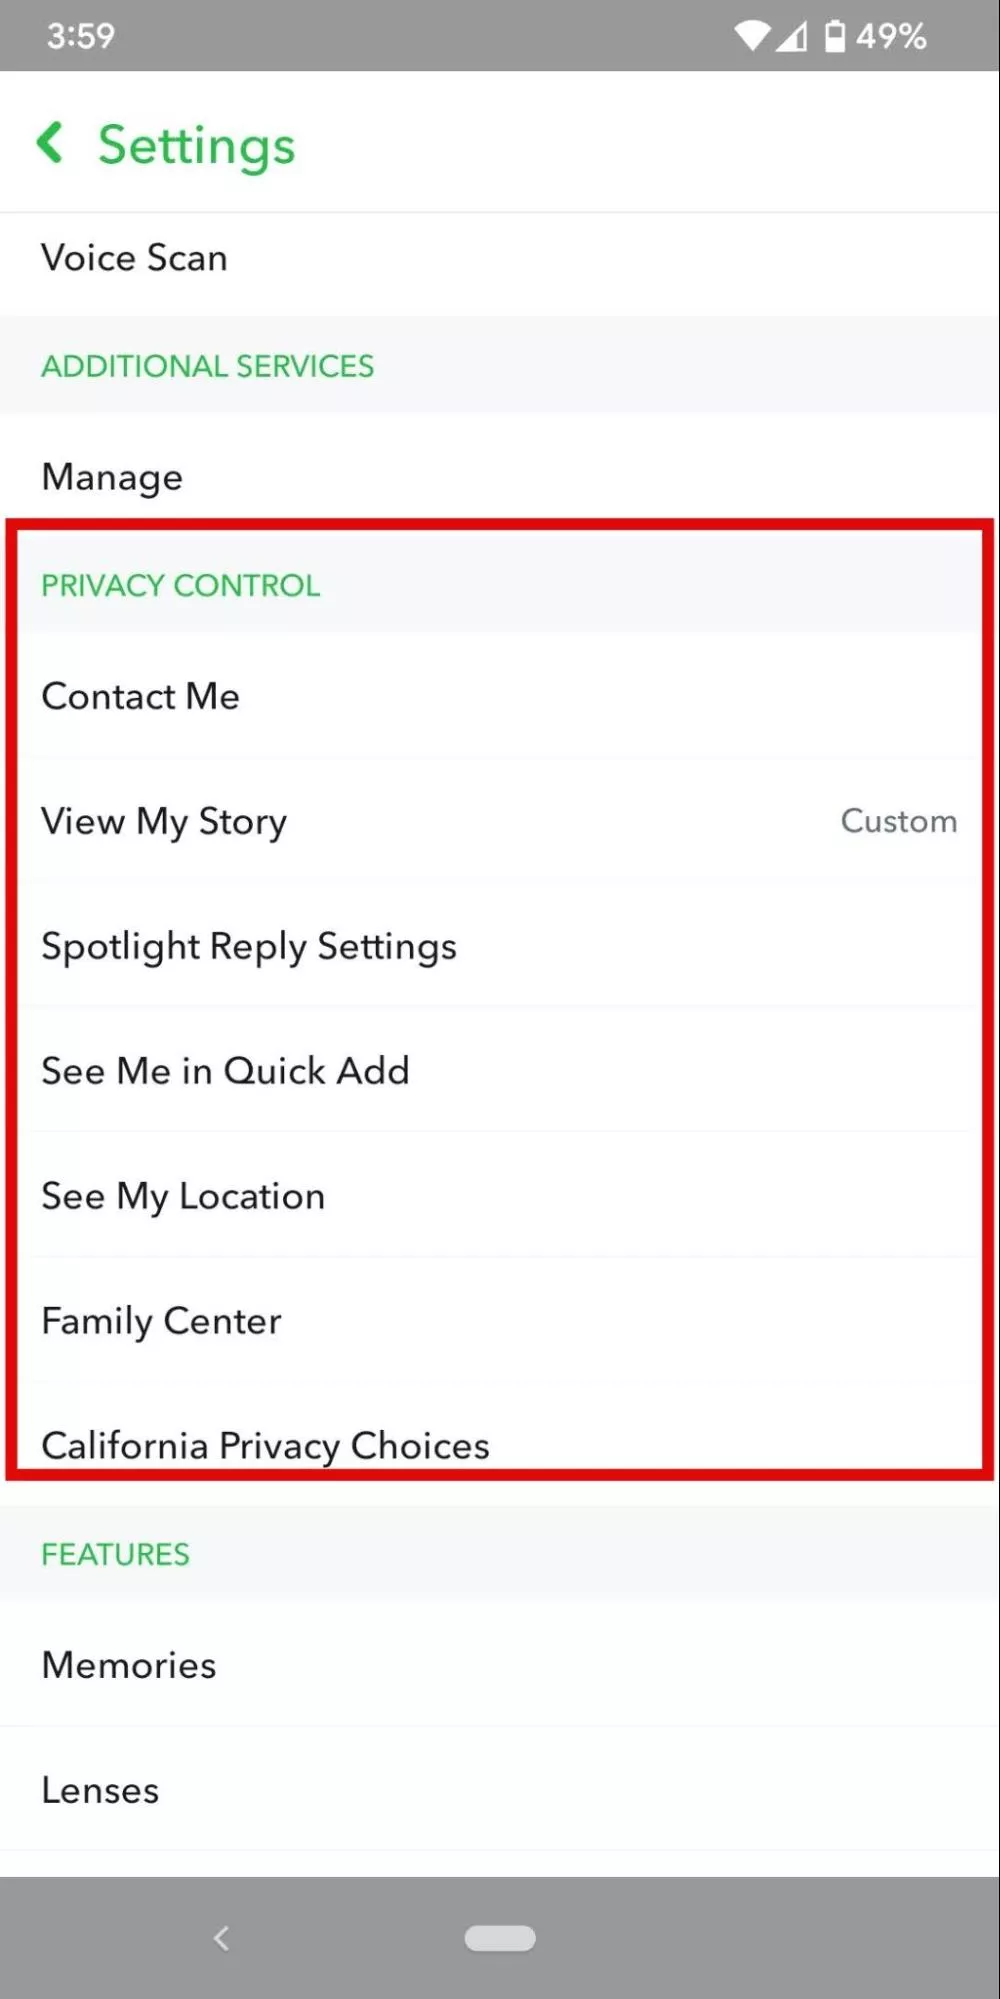 لقطة شاشة من إعدادات تطبيق Snapchat Mobile لإظهار مكان الوصول إلى إعدادات التحكم في الخصوصية